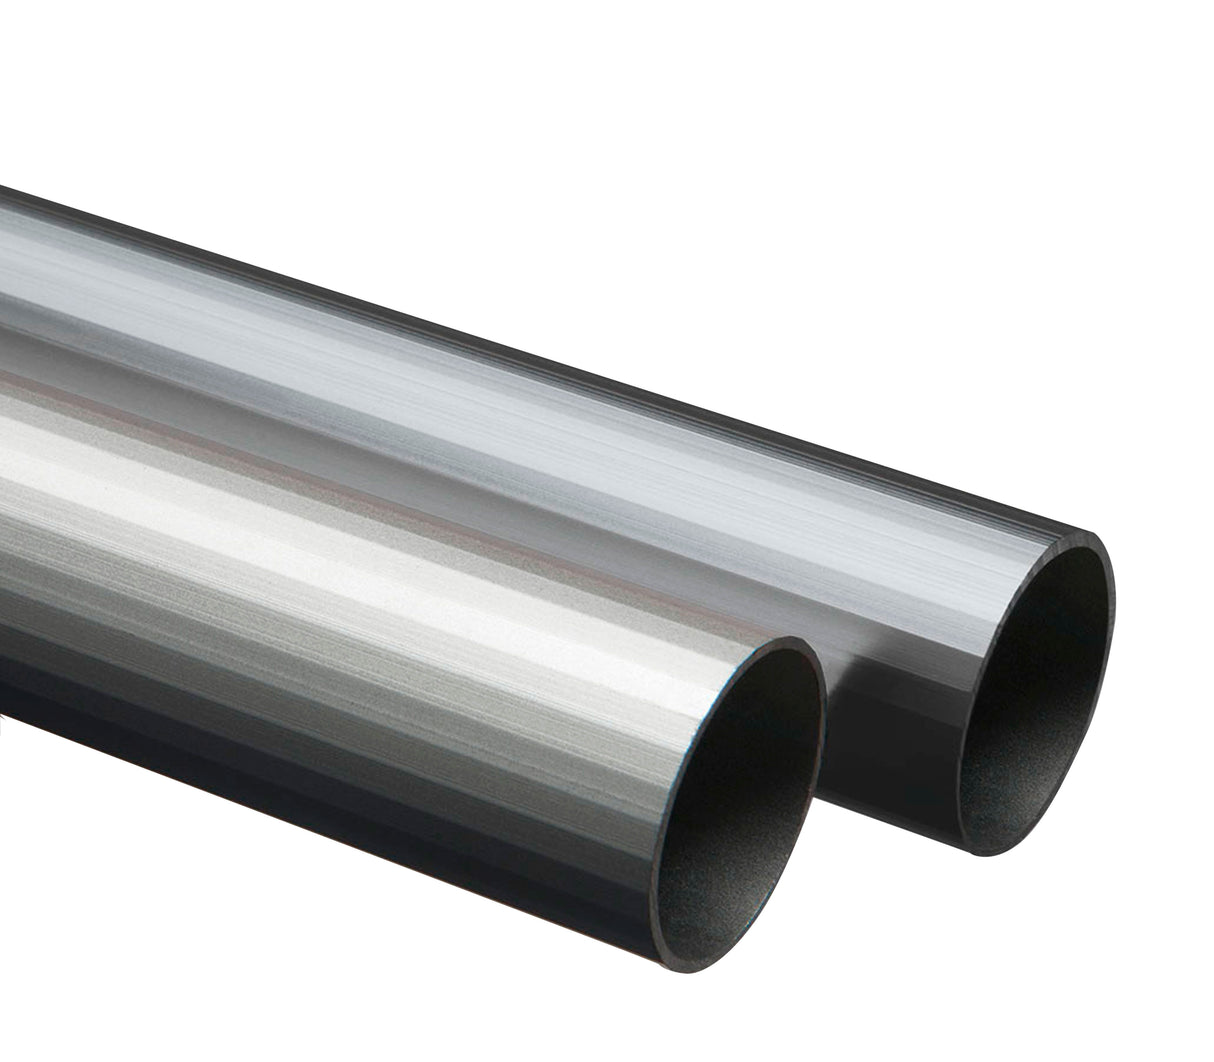 Tubo redondo de aluminio 16mm x 2m Tauro